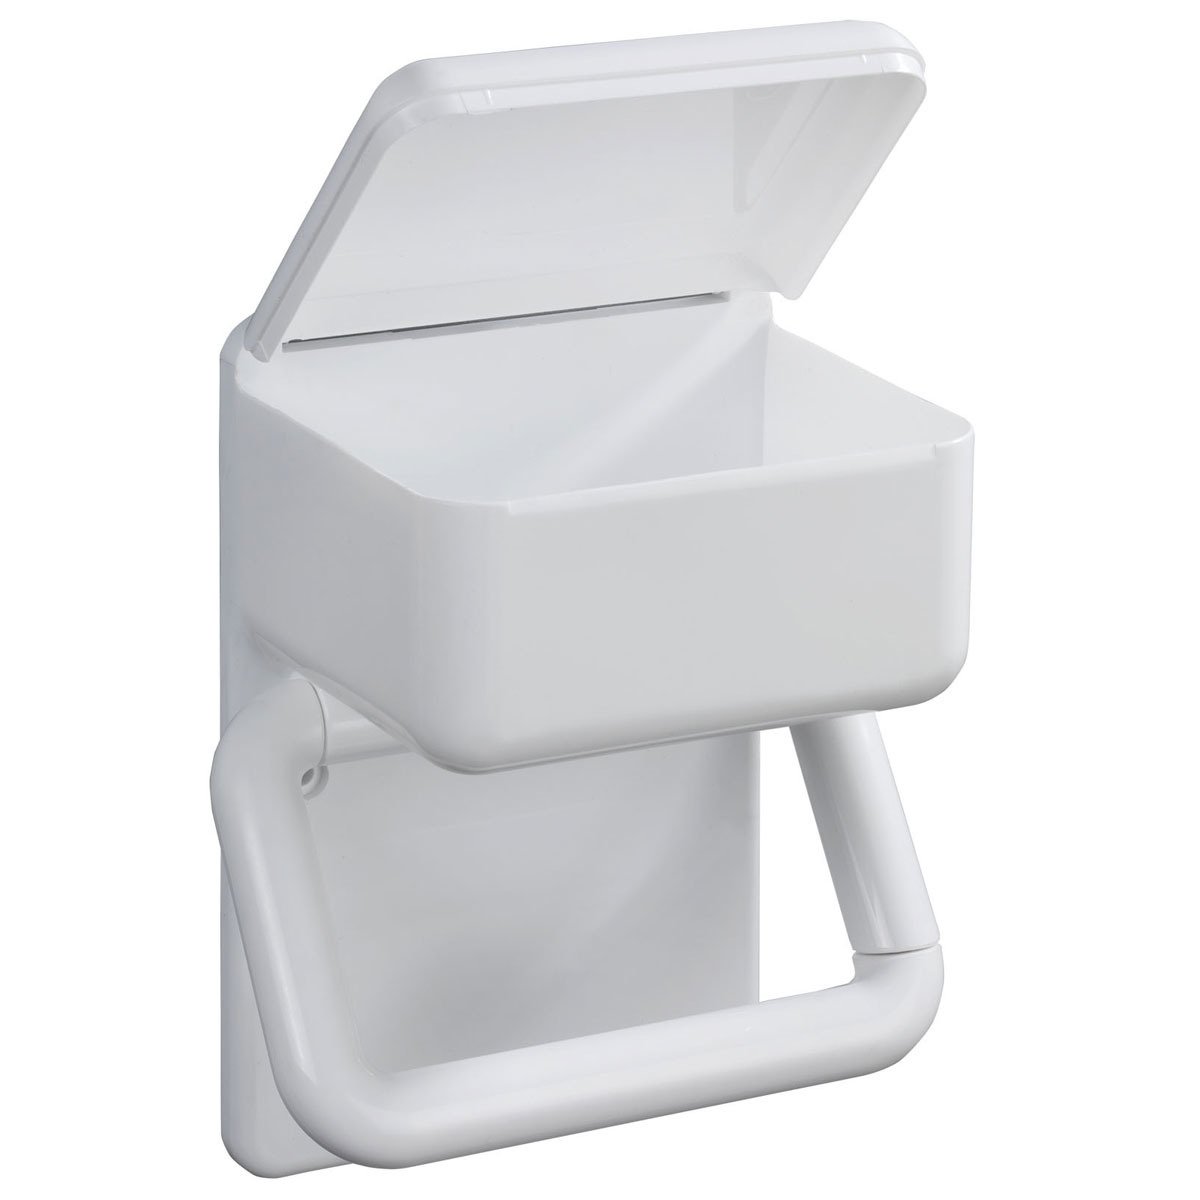 1 2 in | Toilettenpapierhalter home24 kaufen